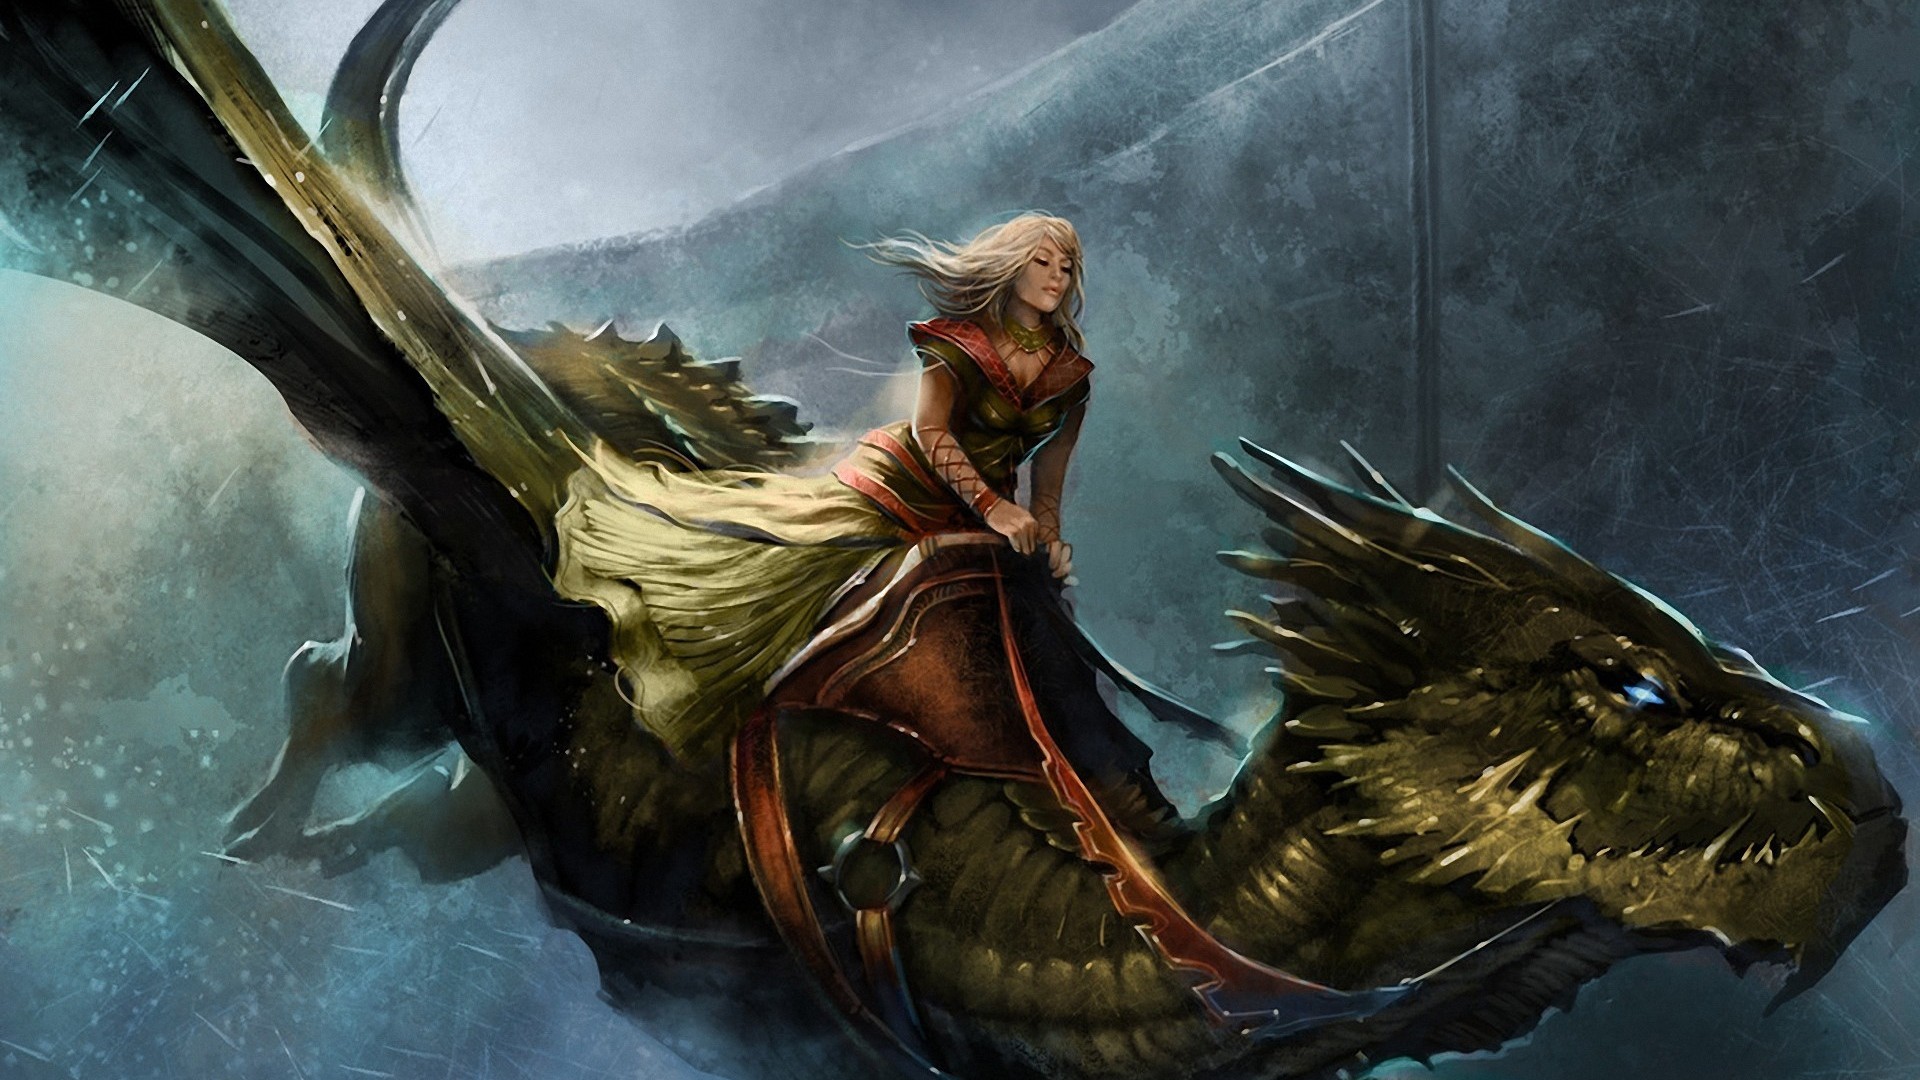 General 1920x1080 fantasy girl fantasy art dragon creature women blonde long hair artwork